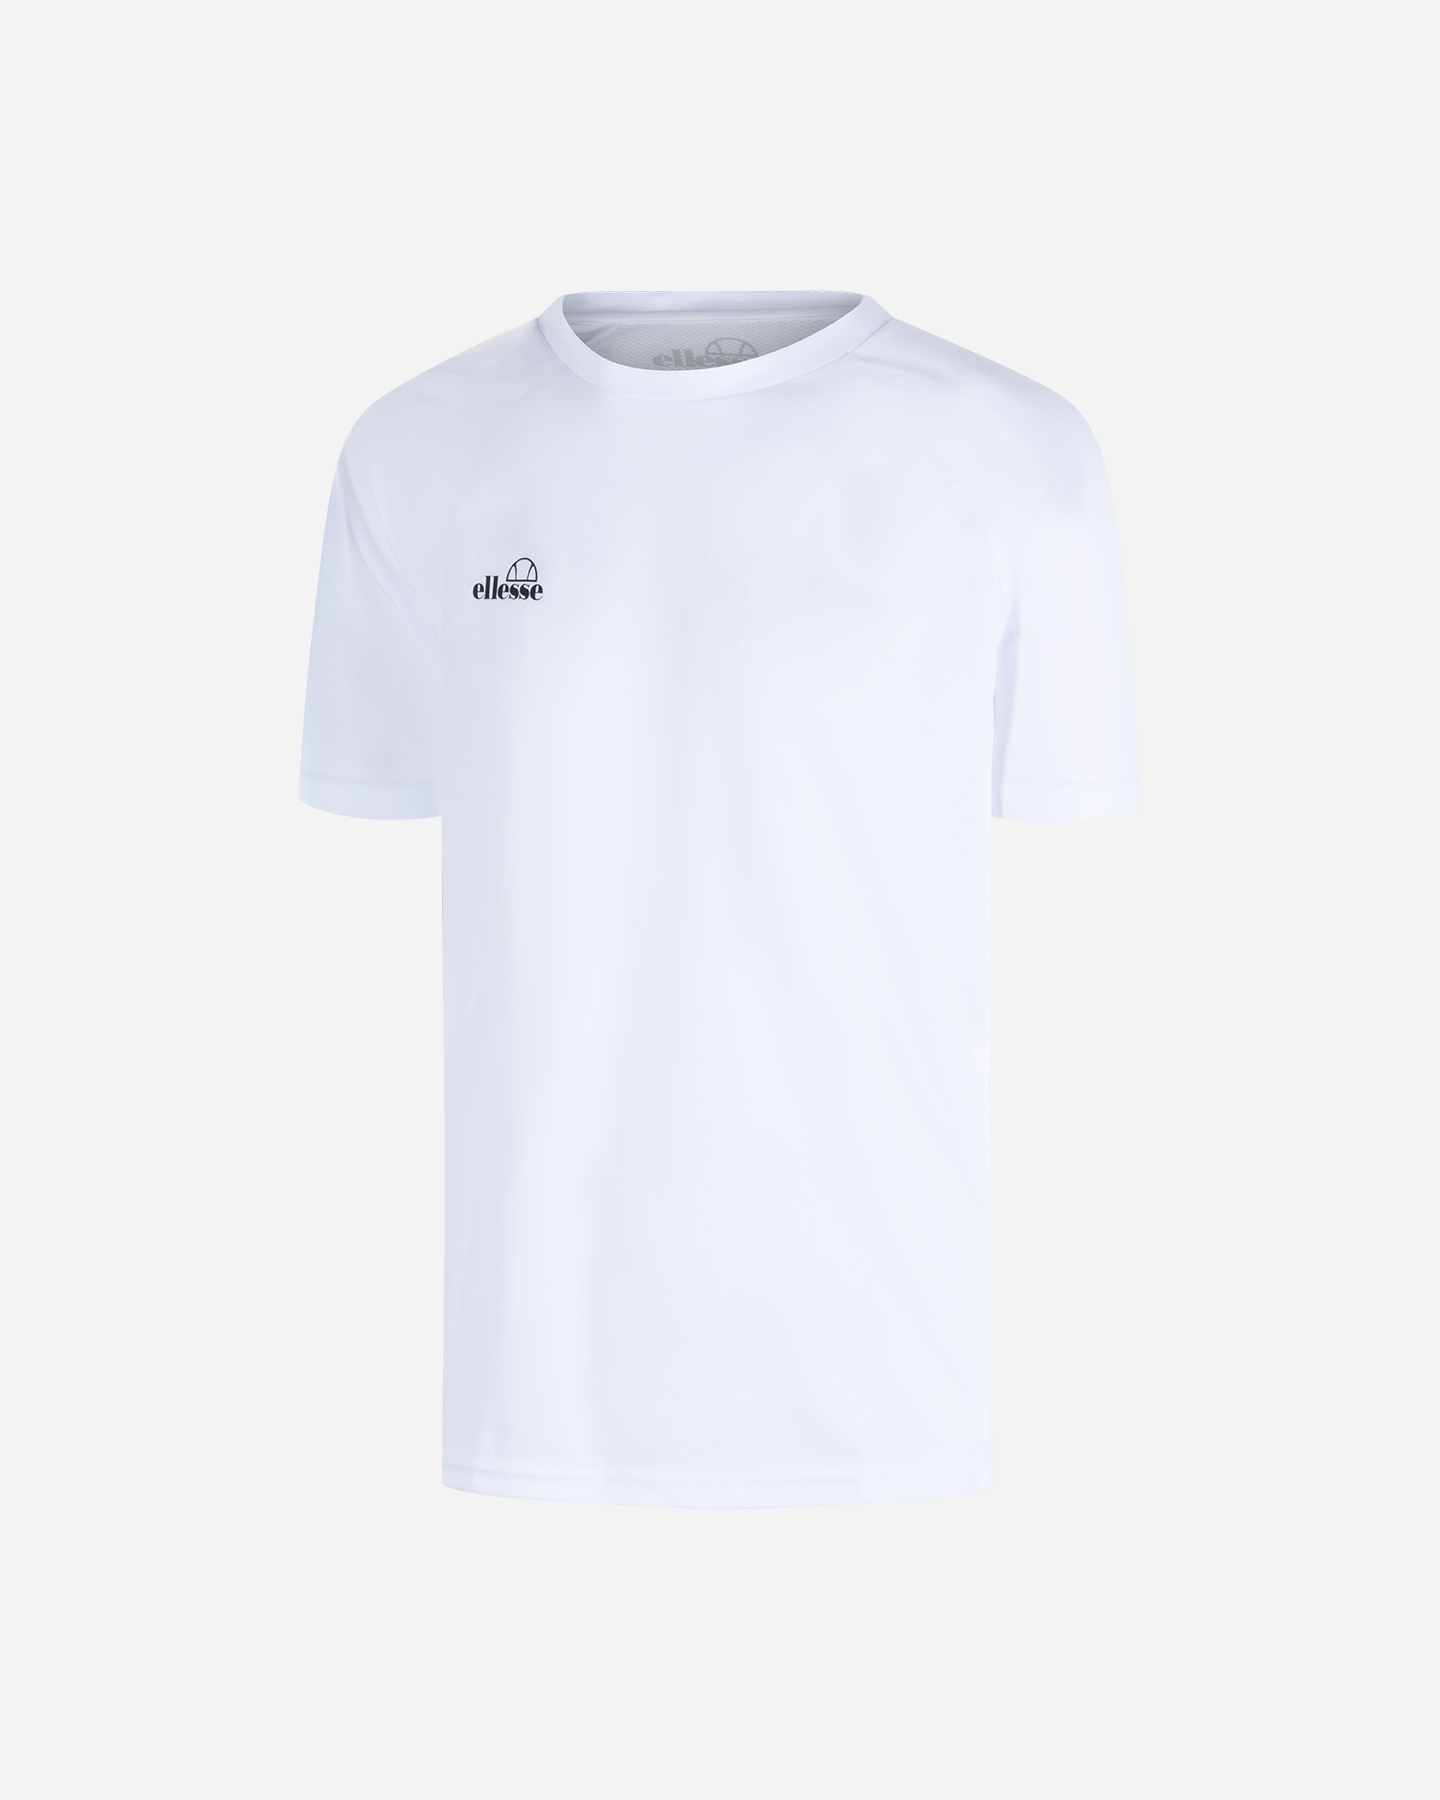 Image of Ellesse Classic M - T-shirt Tennis - Uomo